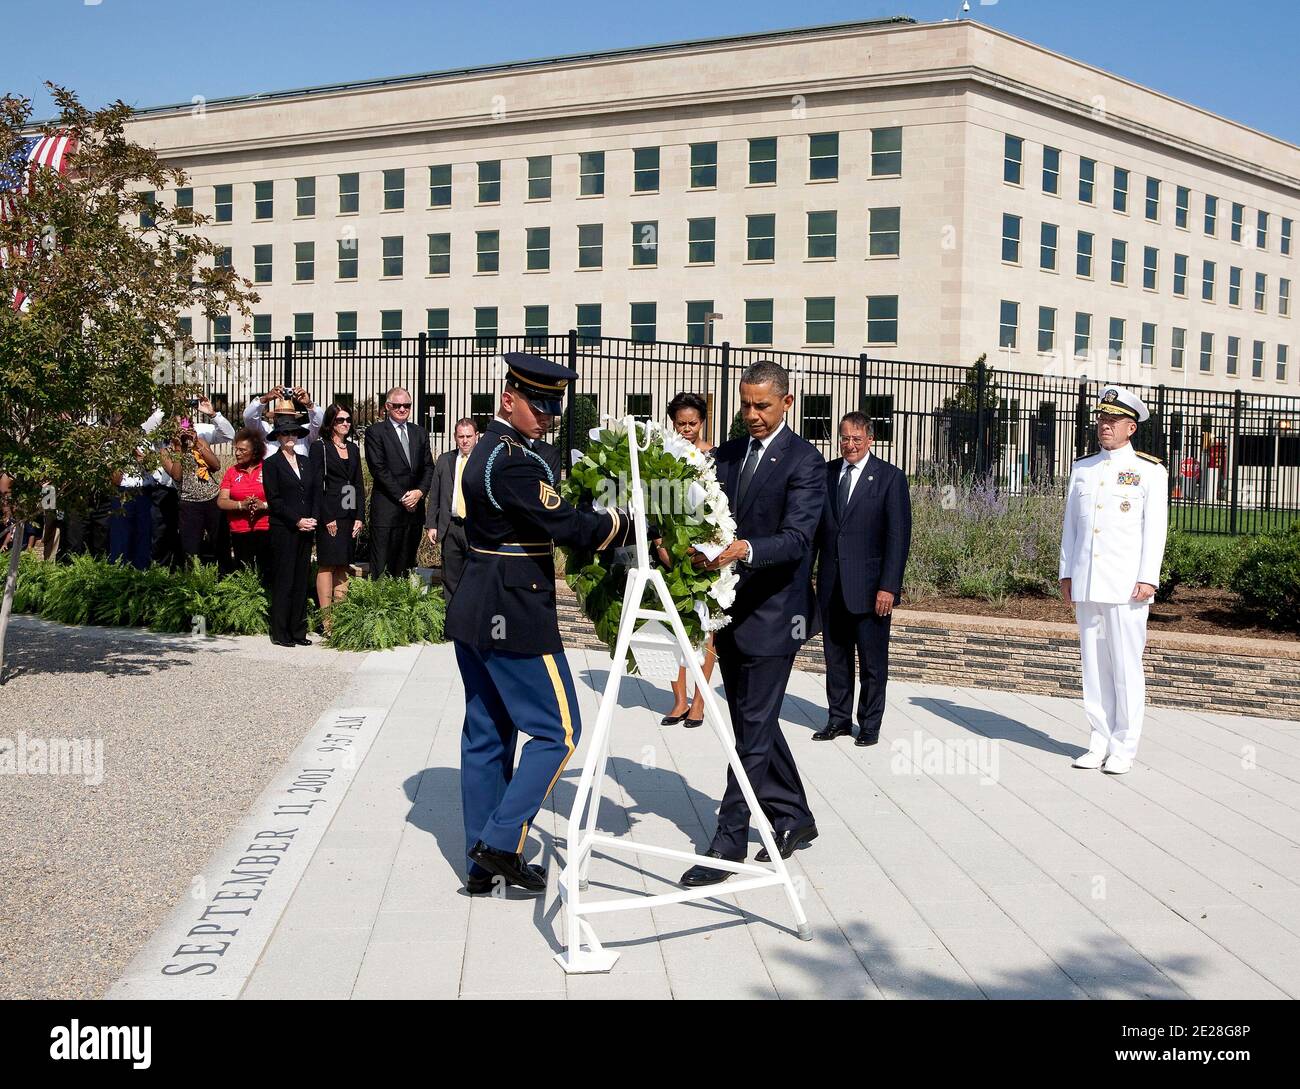 Il presidente degli Stati Uniti Barack Obama depone una corona durante una cerimonia di memoria al Pentagono ad Arlington, VA, USA il 11 settembre 2011. Foto di Joshua Roberts/ABACAPRESS.COM Foto Stock